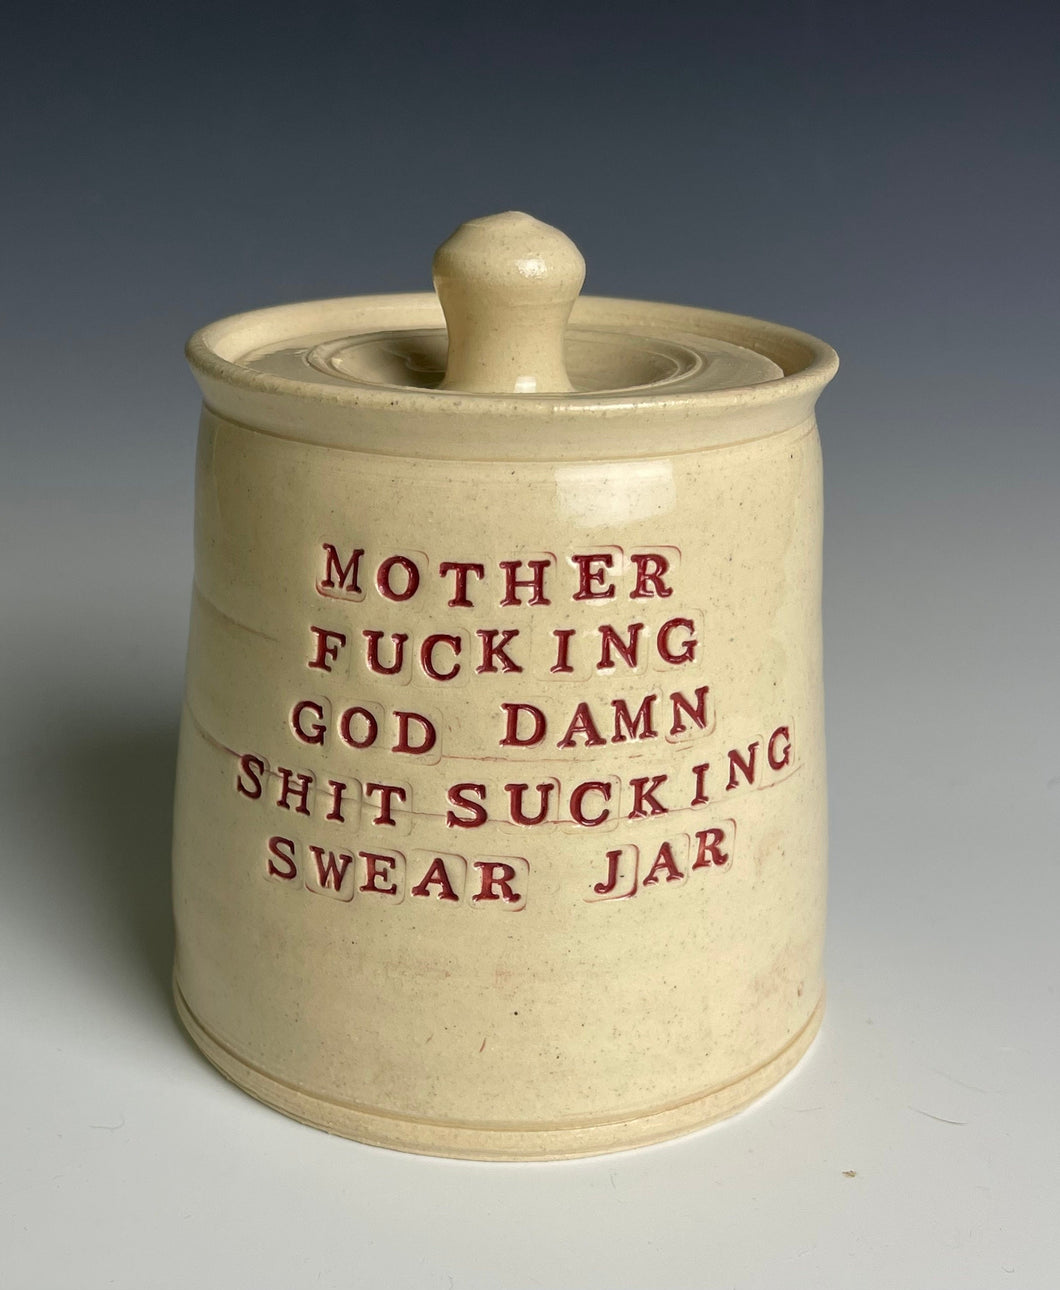 Mother Fucking God Damn Shit Sucking Swear Jar